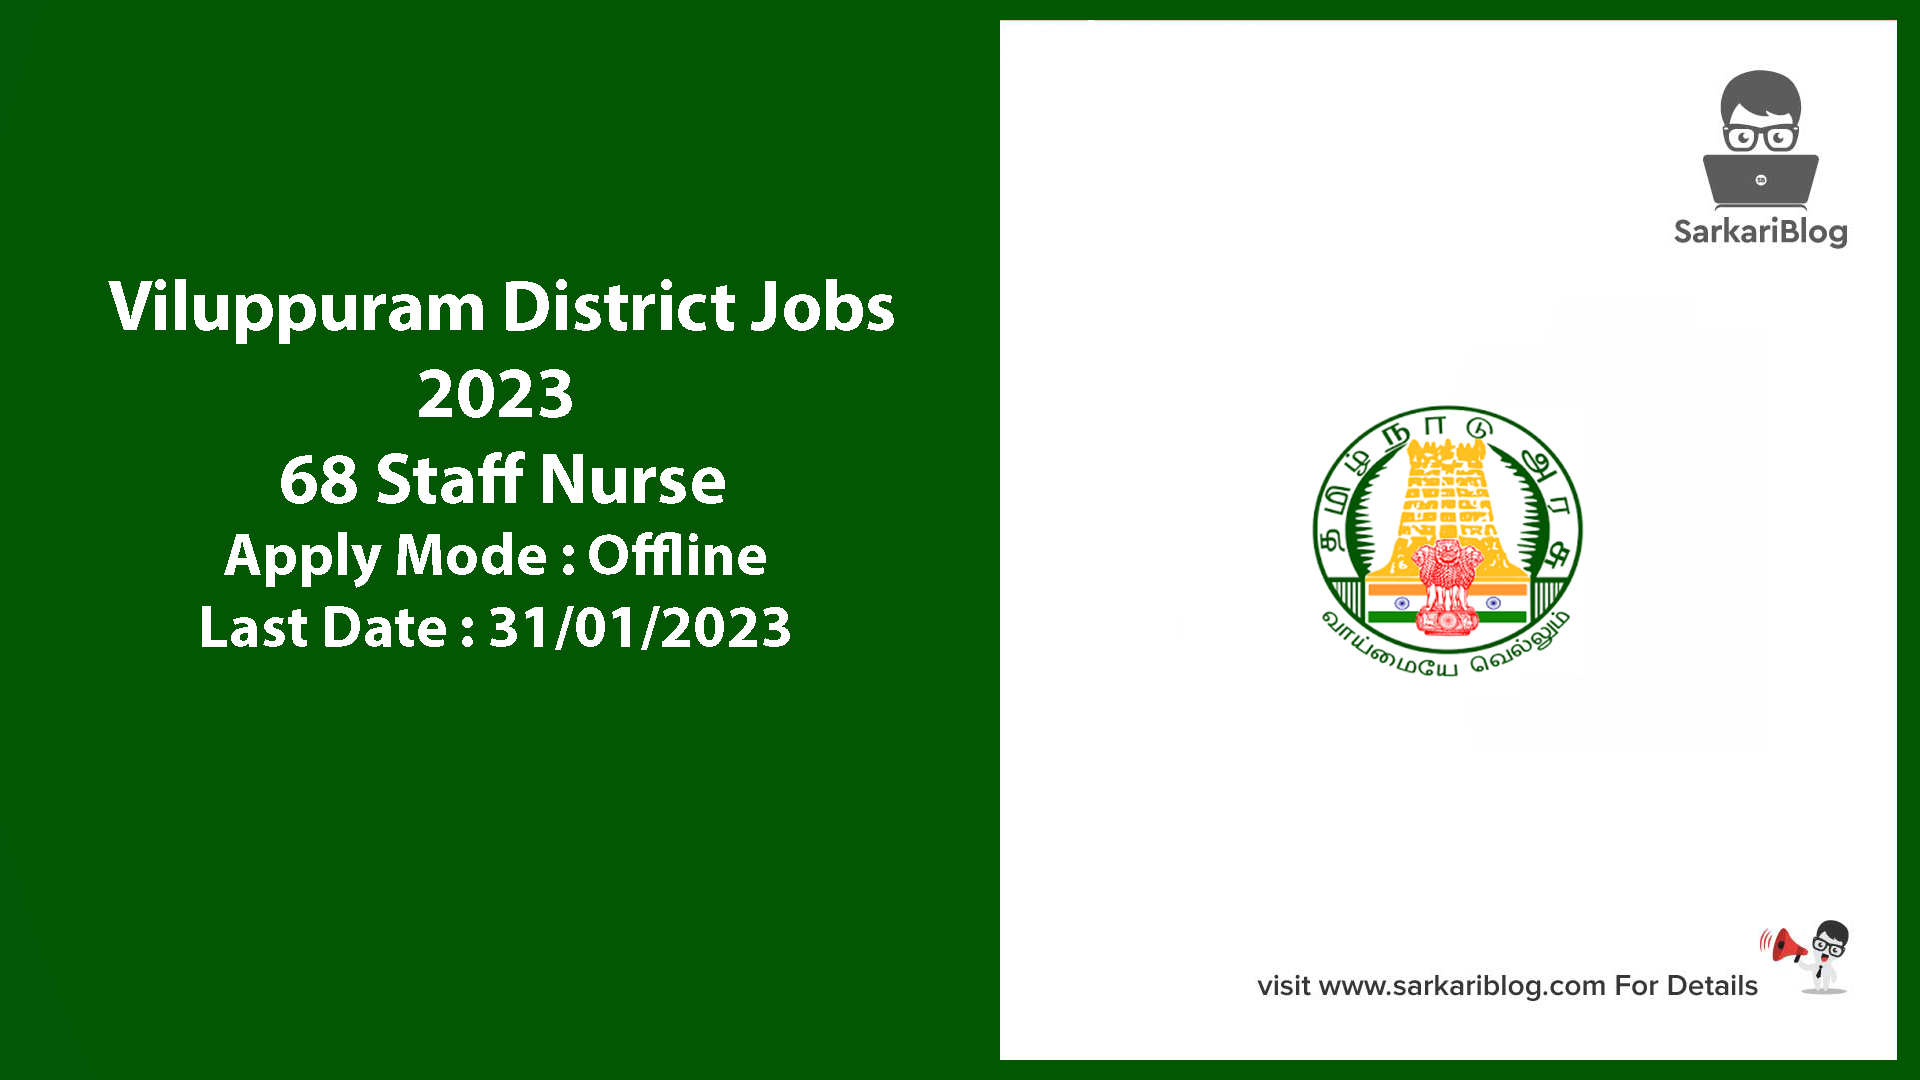 Viluppuram District Jobs 2023